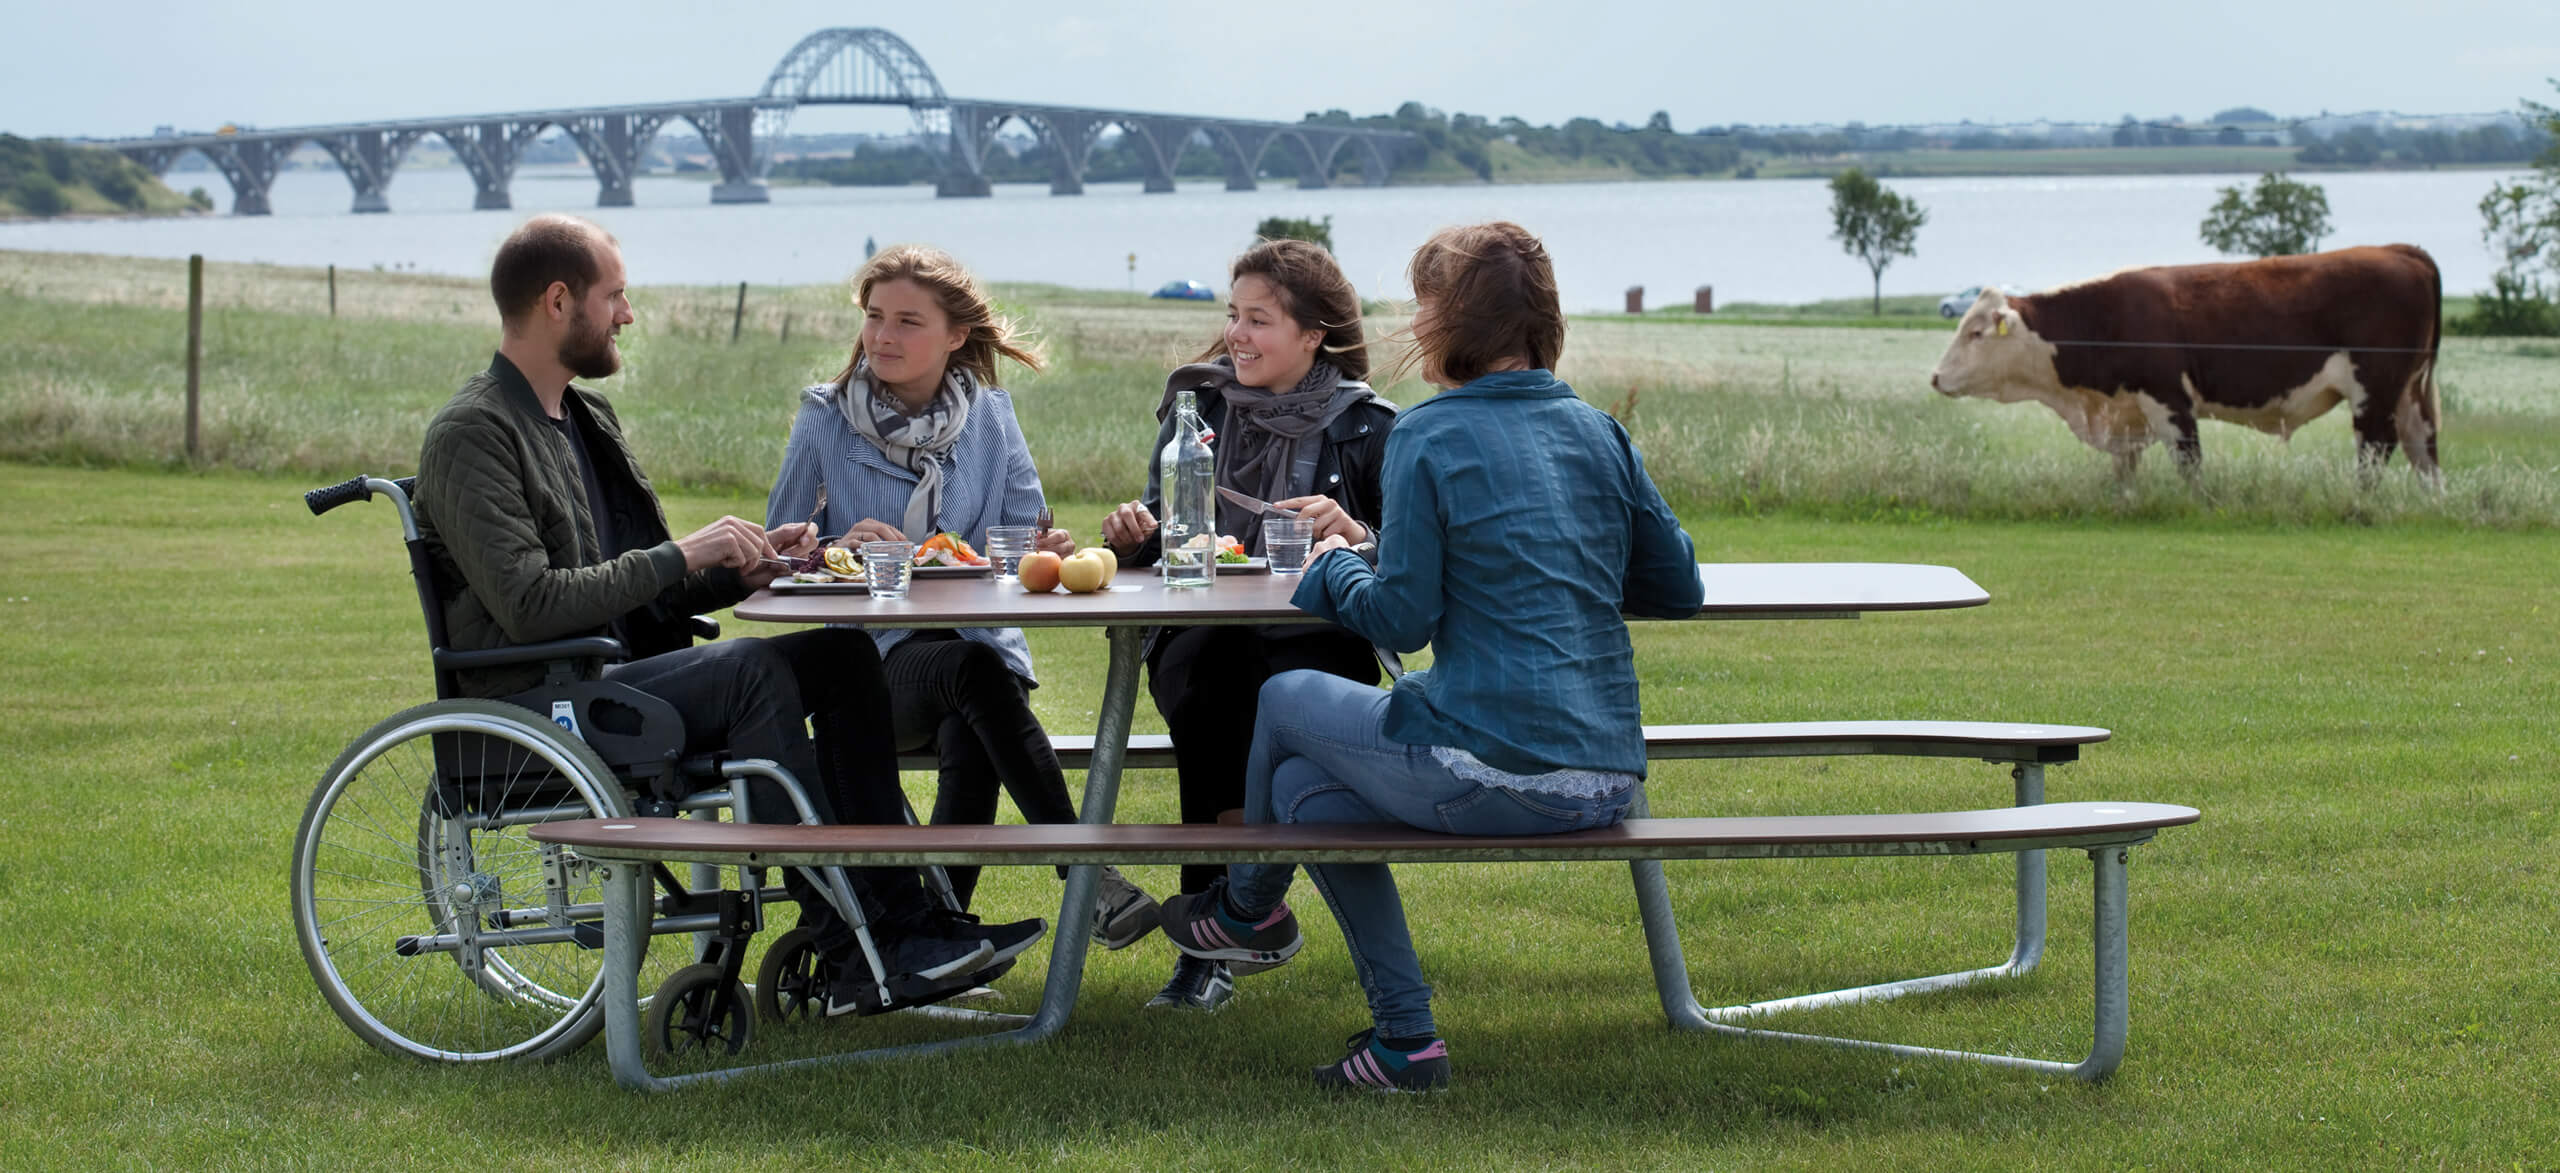 Et plateau picnic I bord i grønne omgivelser, hvor fire personer spiser frokost